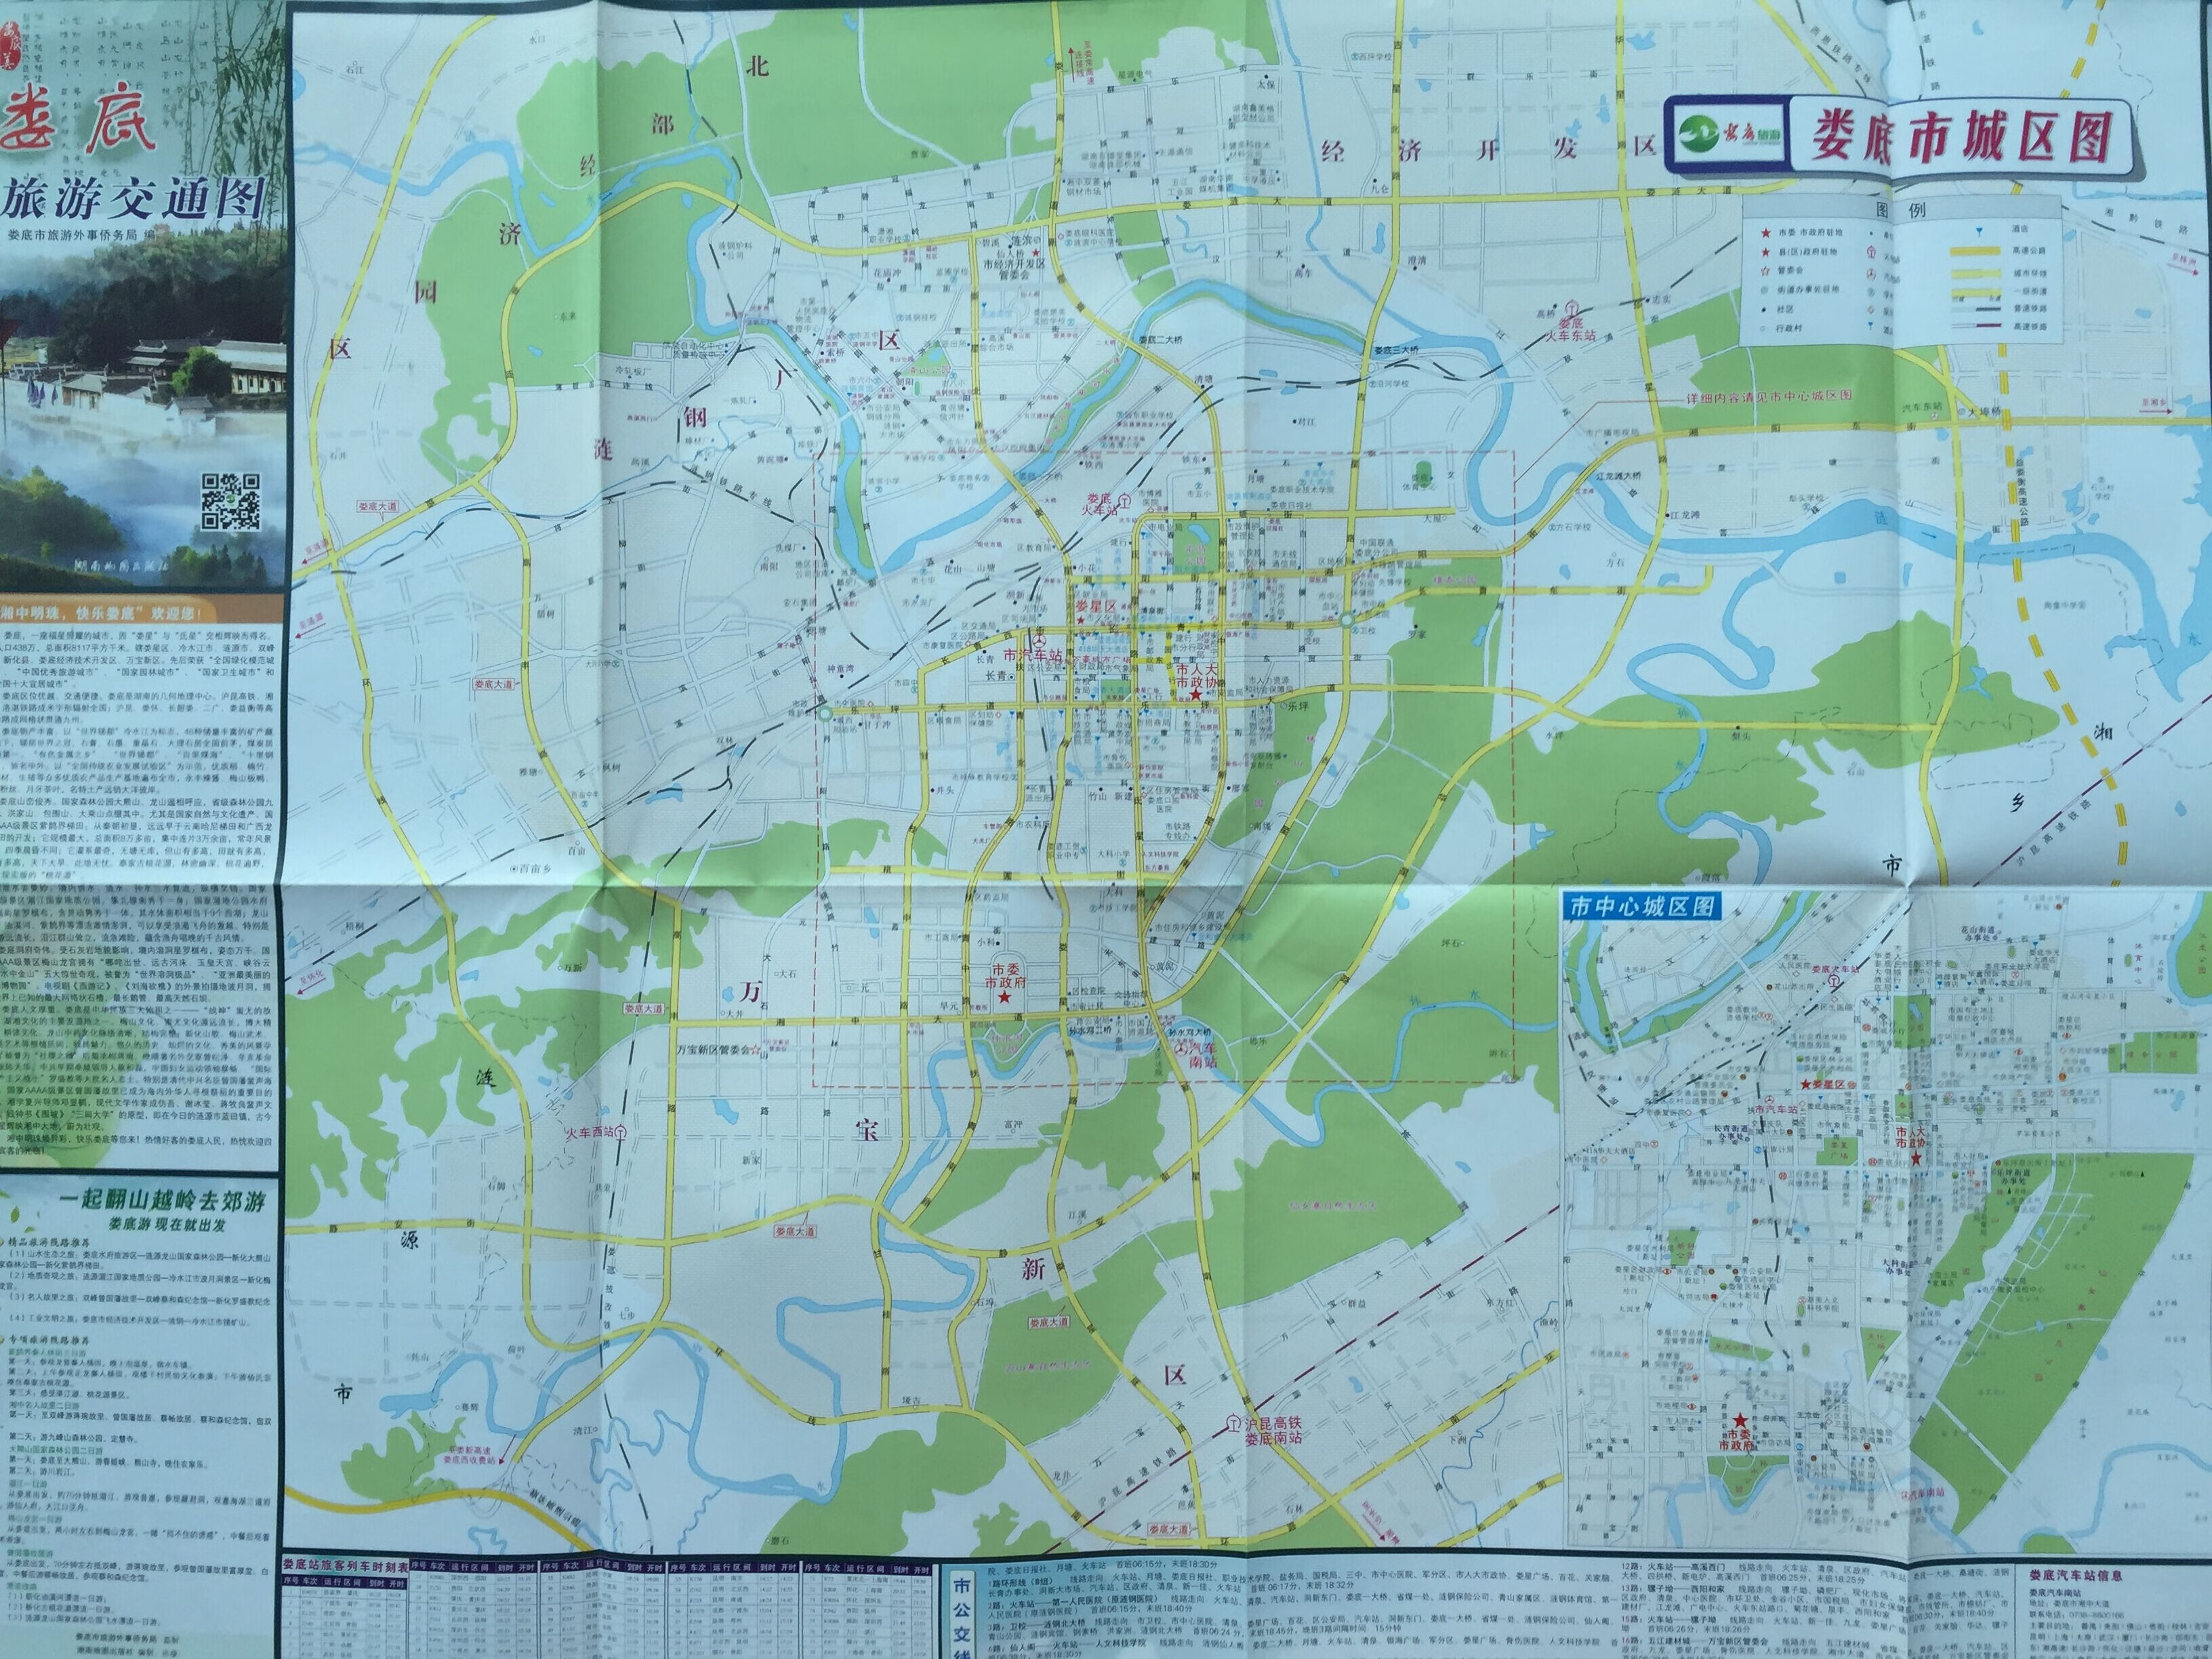 娄底旅游交通图 2015年12月  娄底地图室 娄底市地图